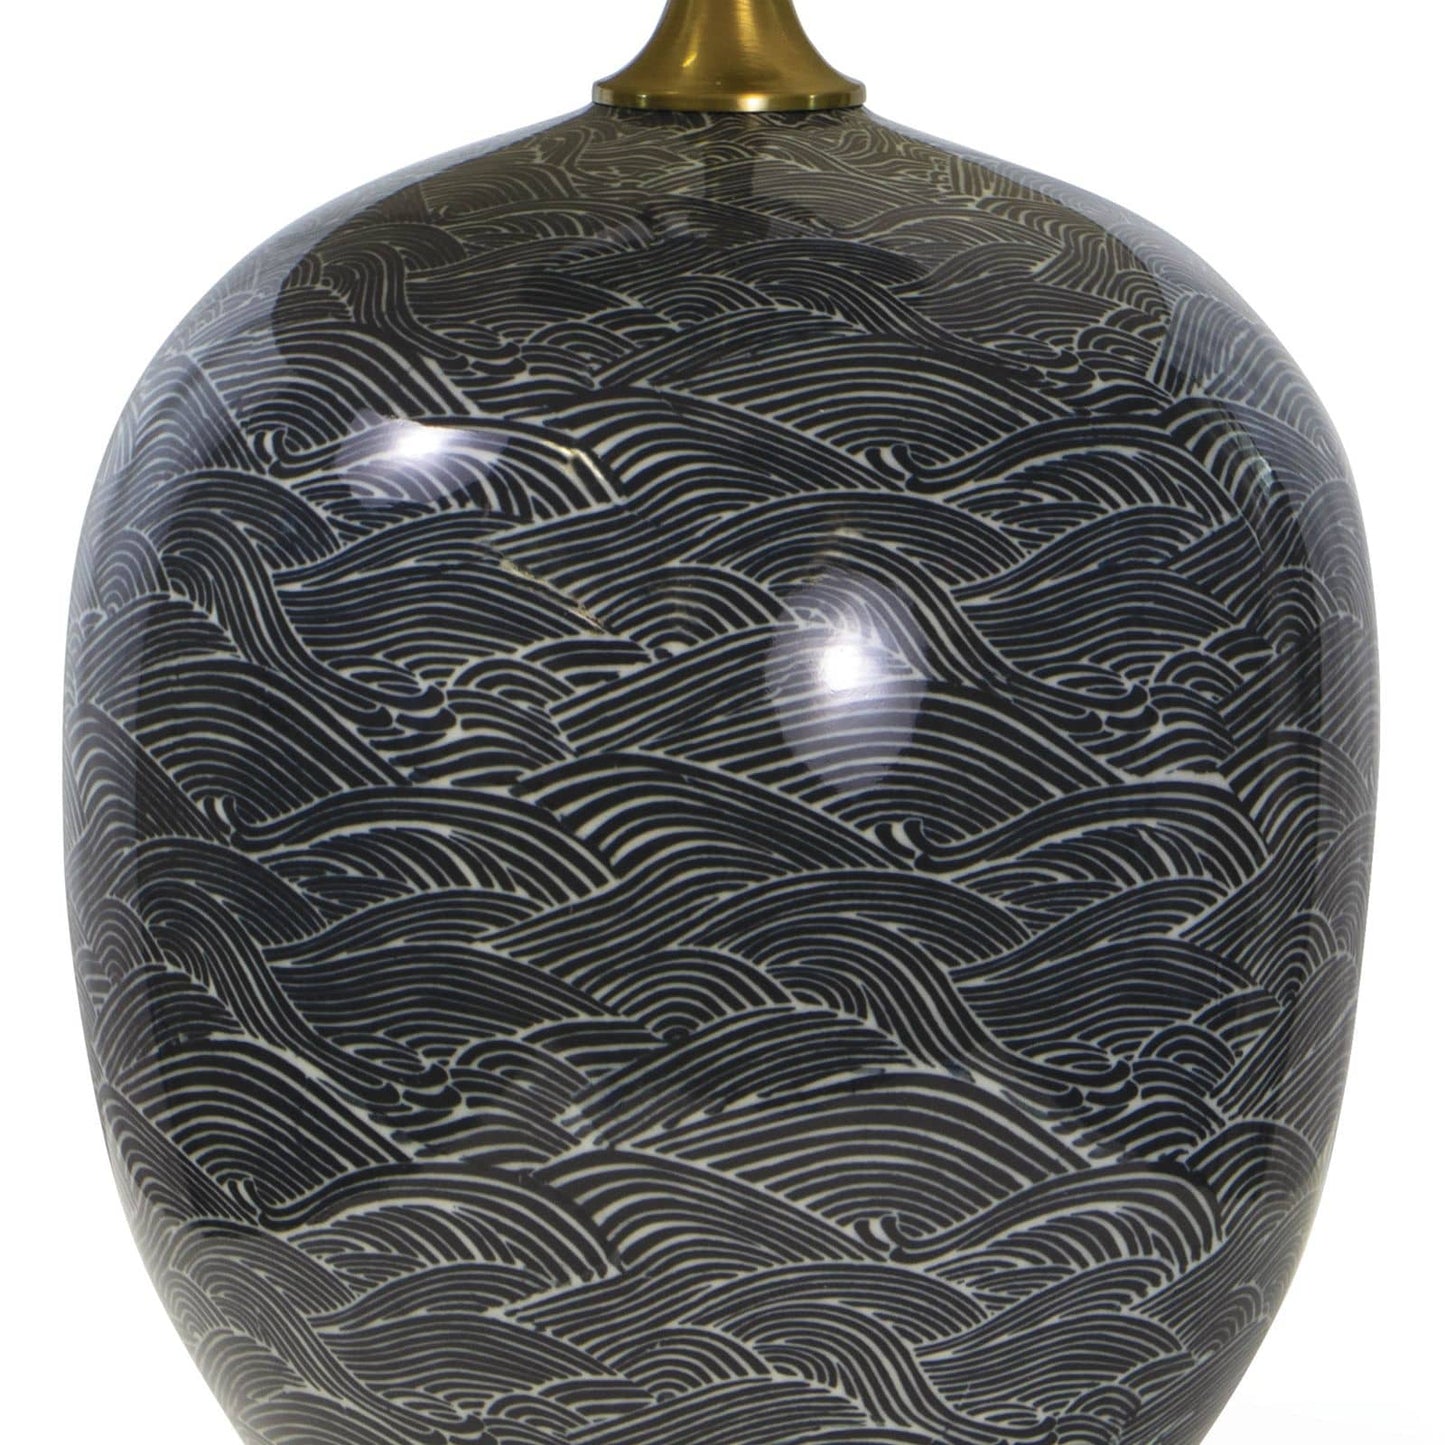 Harbor Ceramic Table Lamp in Black by Regina Andrew